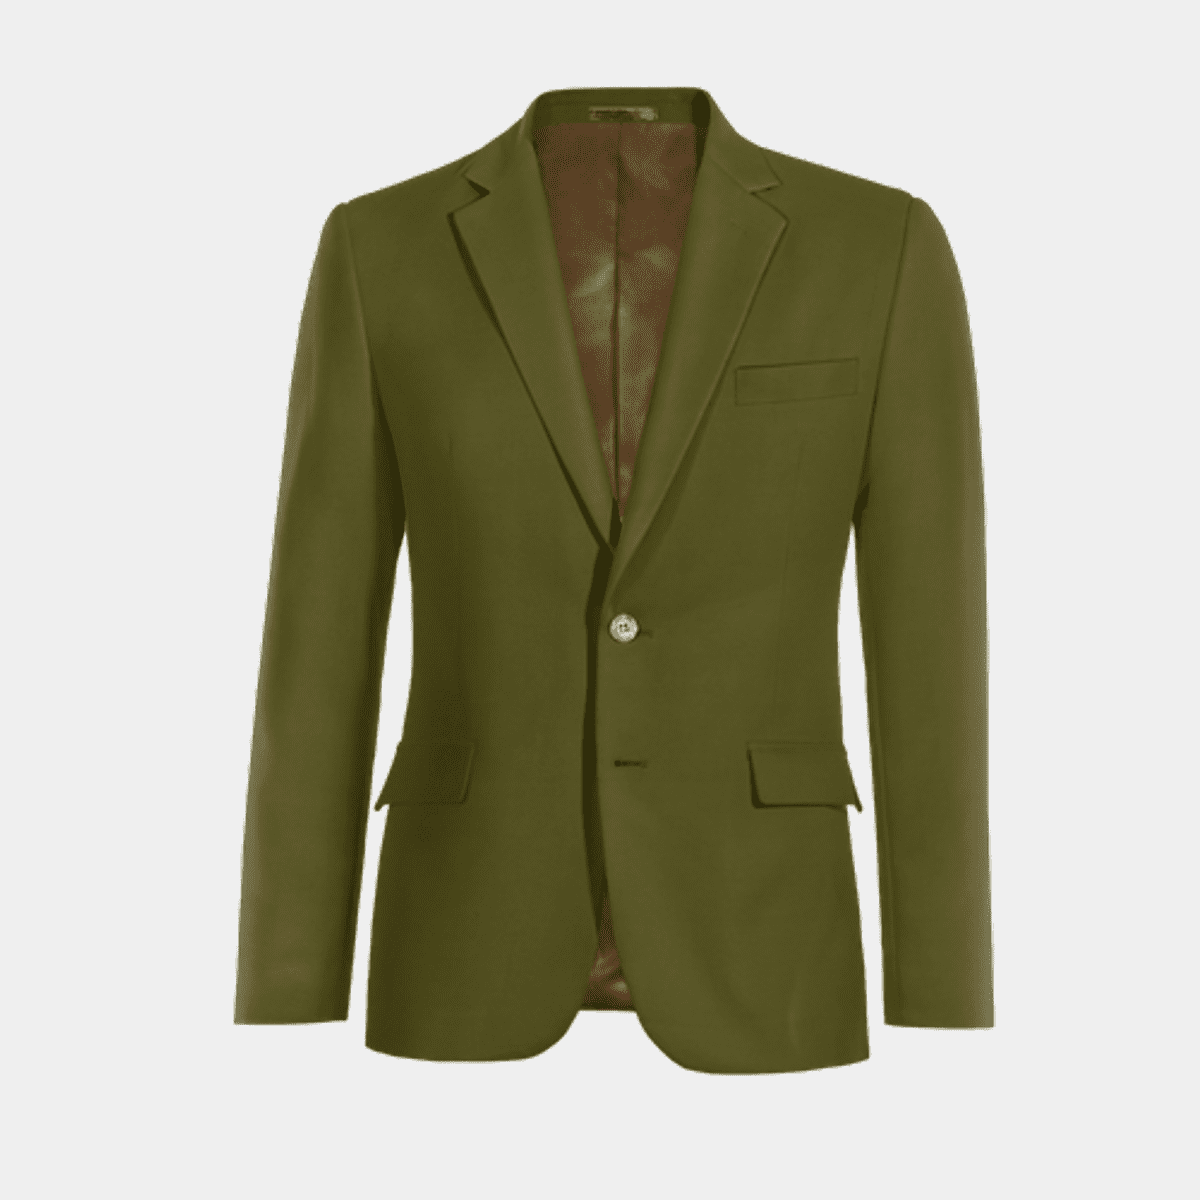 Royal Green Giacche Reggimento Cravatte Verde Taglia unica